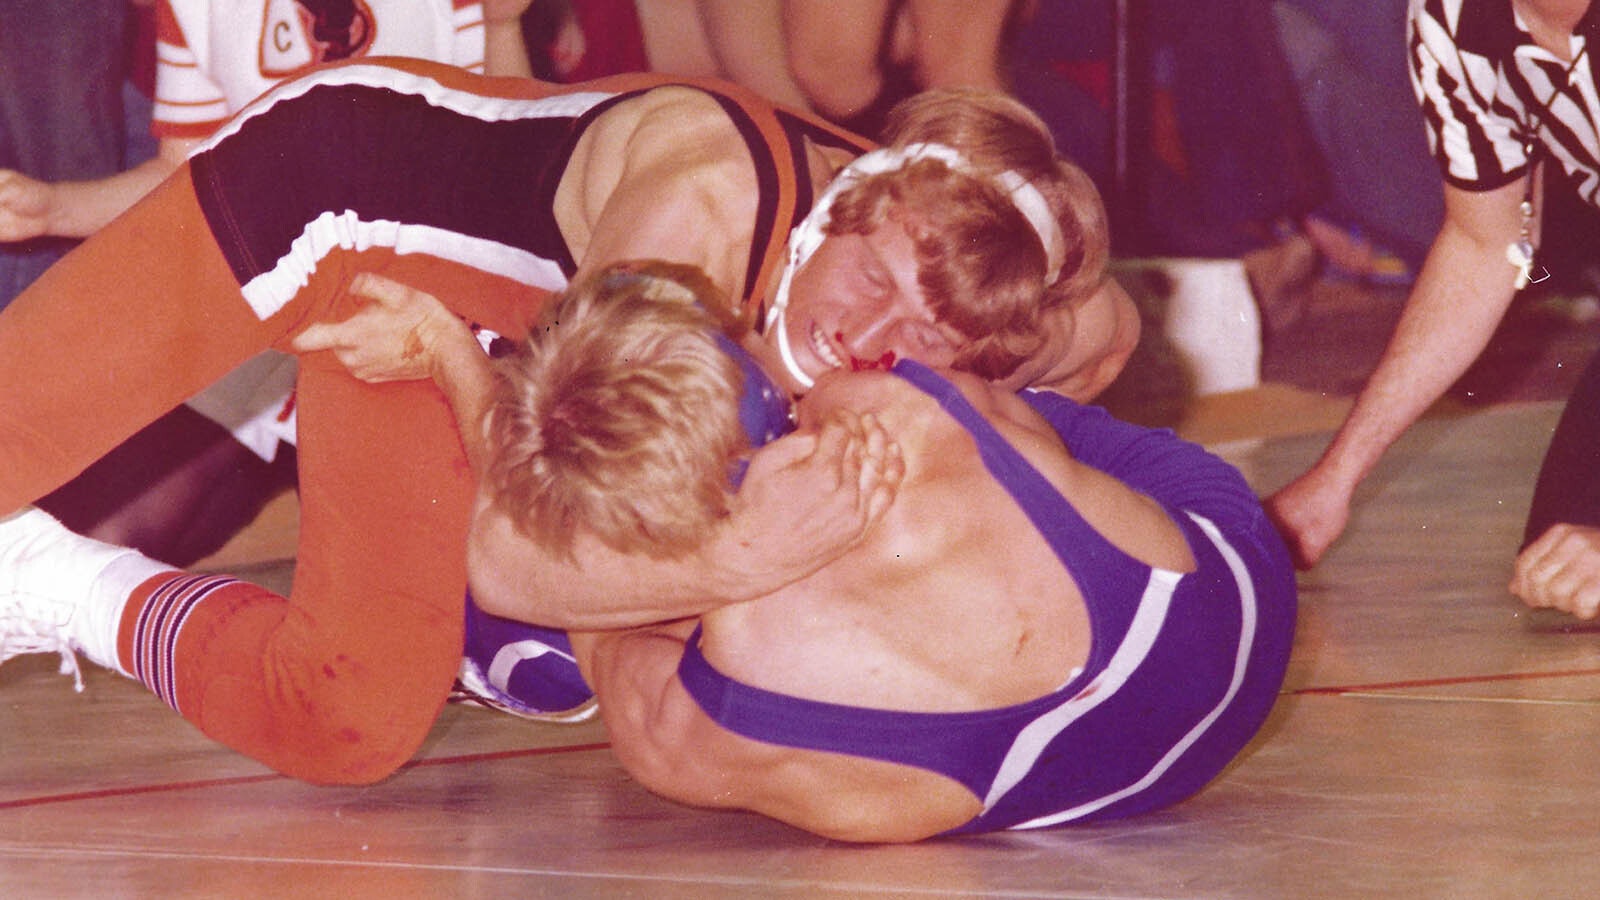 Stewart Petersen became a state champion wrestler in high school.